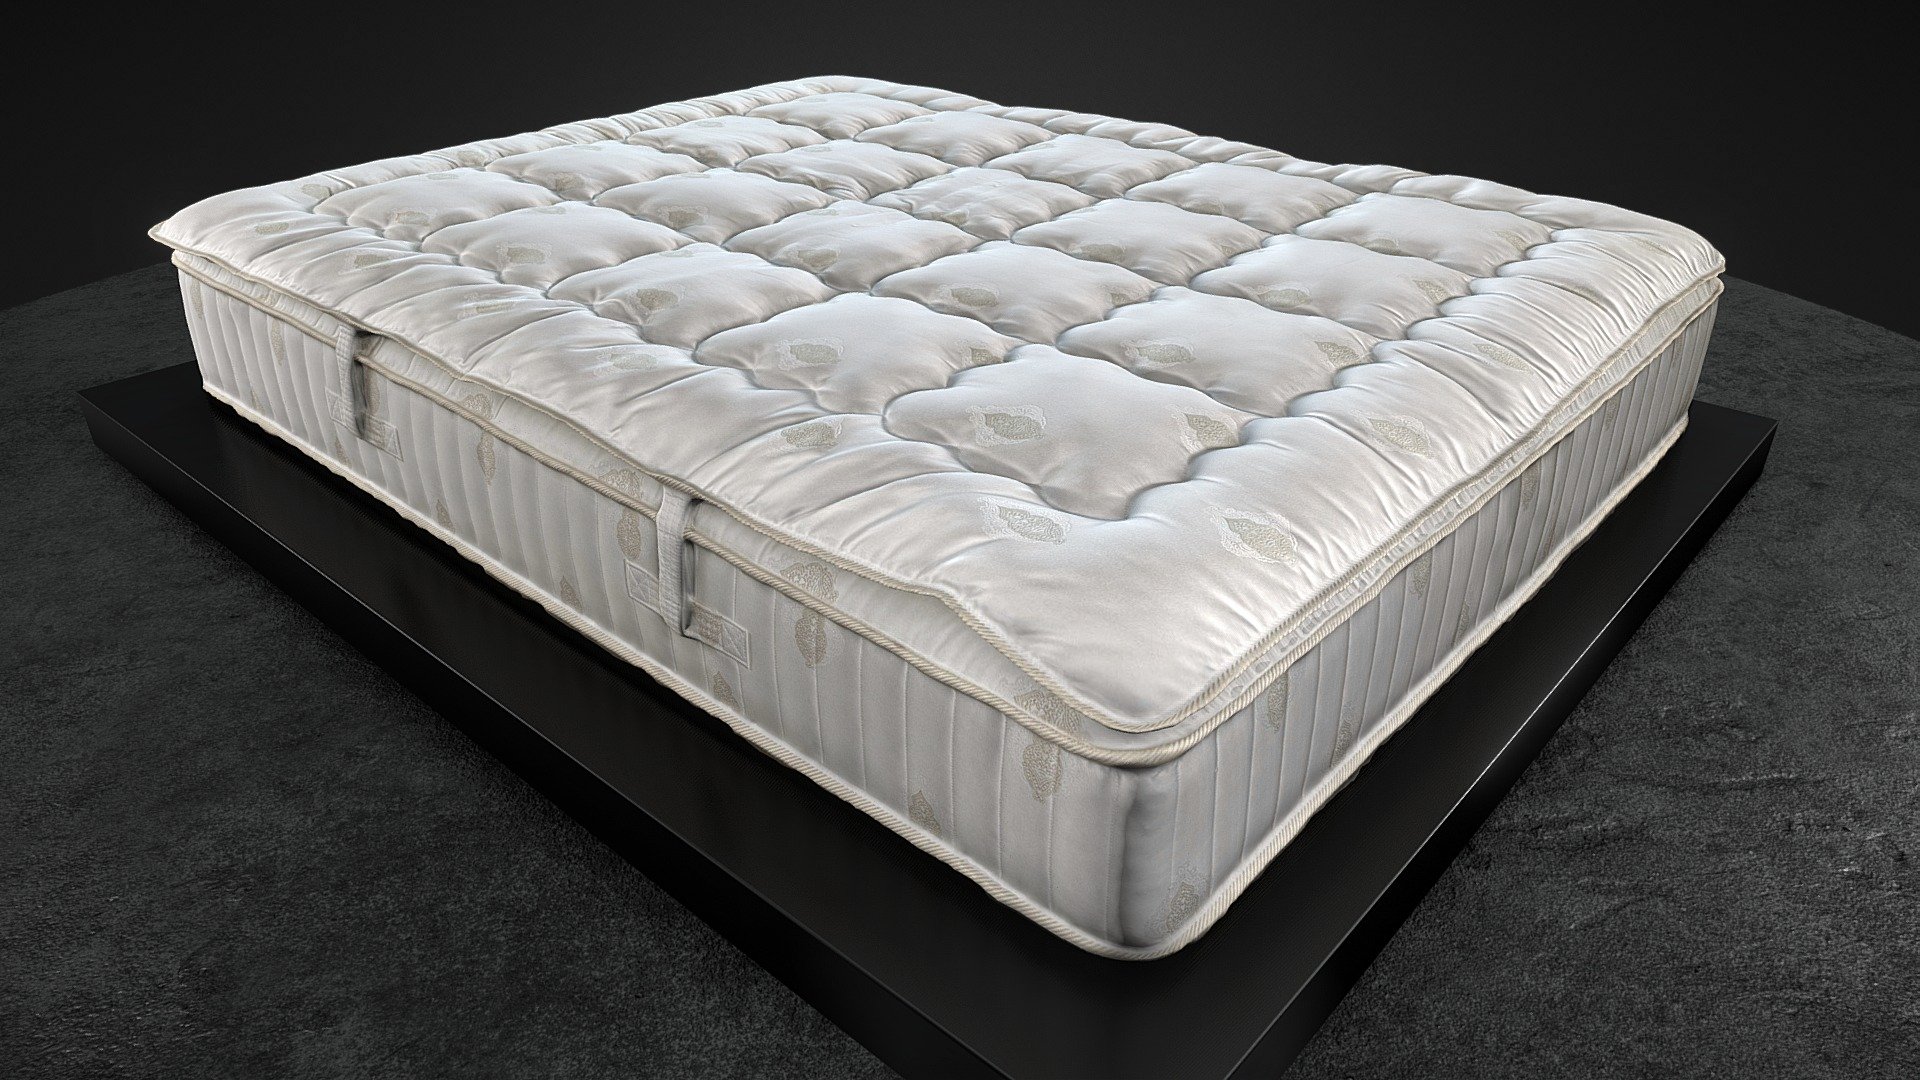 Royal comfort mattress - Royal comfort mattress - 3D model by zwiazek 3d model